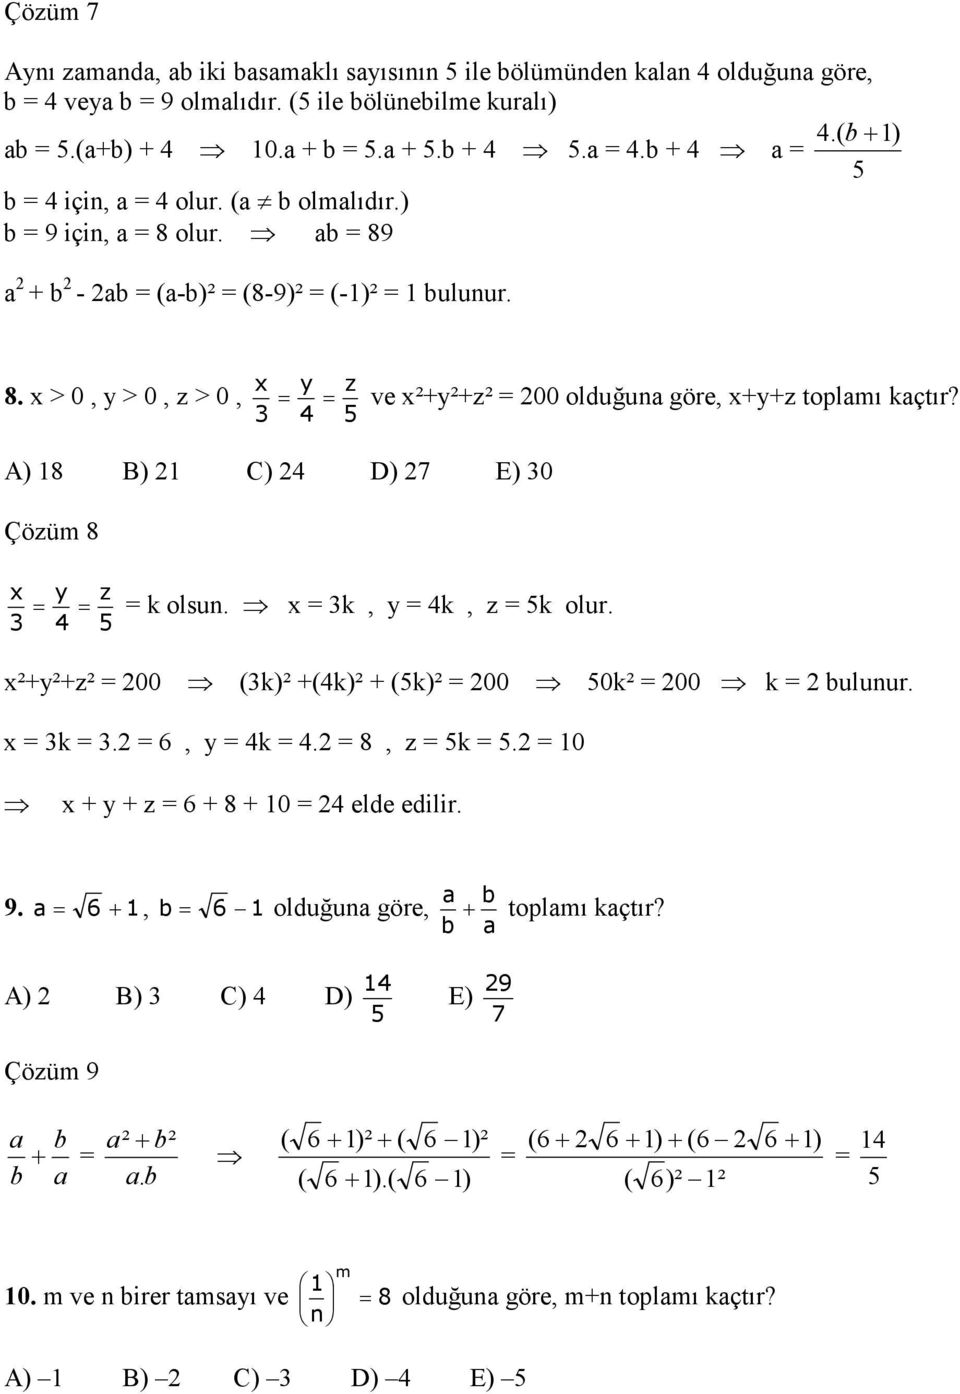 4 5 A) 18 B) 1 C) 4 D) 7 E) 0 Çözüm 8 x y z k olsun. x k, y 4k, z 5k olur. 4 5 x²+y²+z² 00 (k)² +(4k)² + (5k)² 00 50k² 00 k bulunur. x k. 6, y 4k 4. 8, z 5k 5. 10 x + y + z 6 + 8 + 10 4 elde edilir.